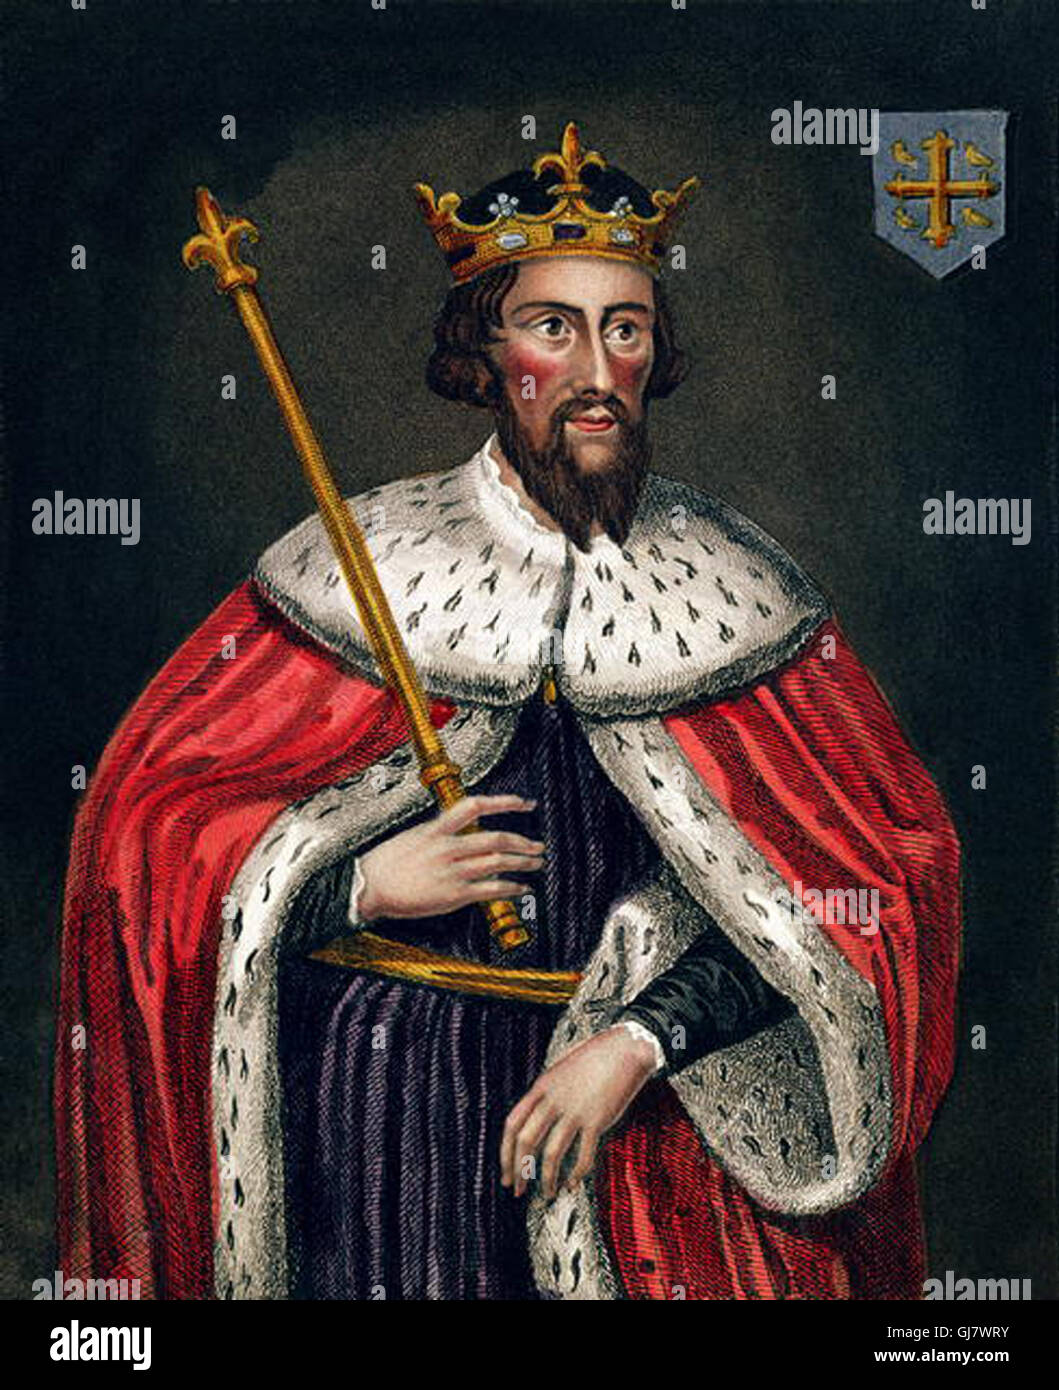 Alfred der große (849 – 26. Oktober 899) war König von Wessex von 871 bis 899.  Hier zu sehen in der Bodleian Library (Farbe-Gravur) von English School (19. Jh.), Public Domain Bild malen. Stockfoto